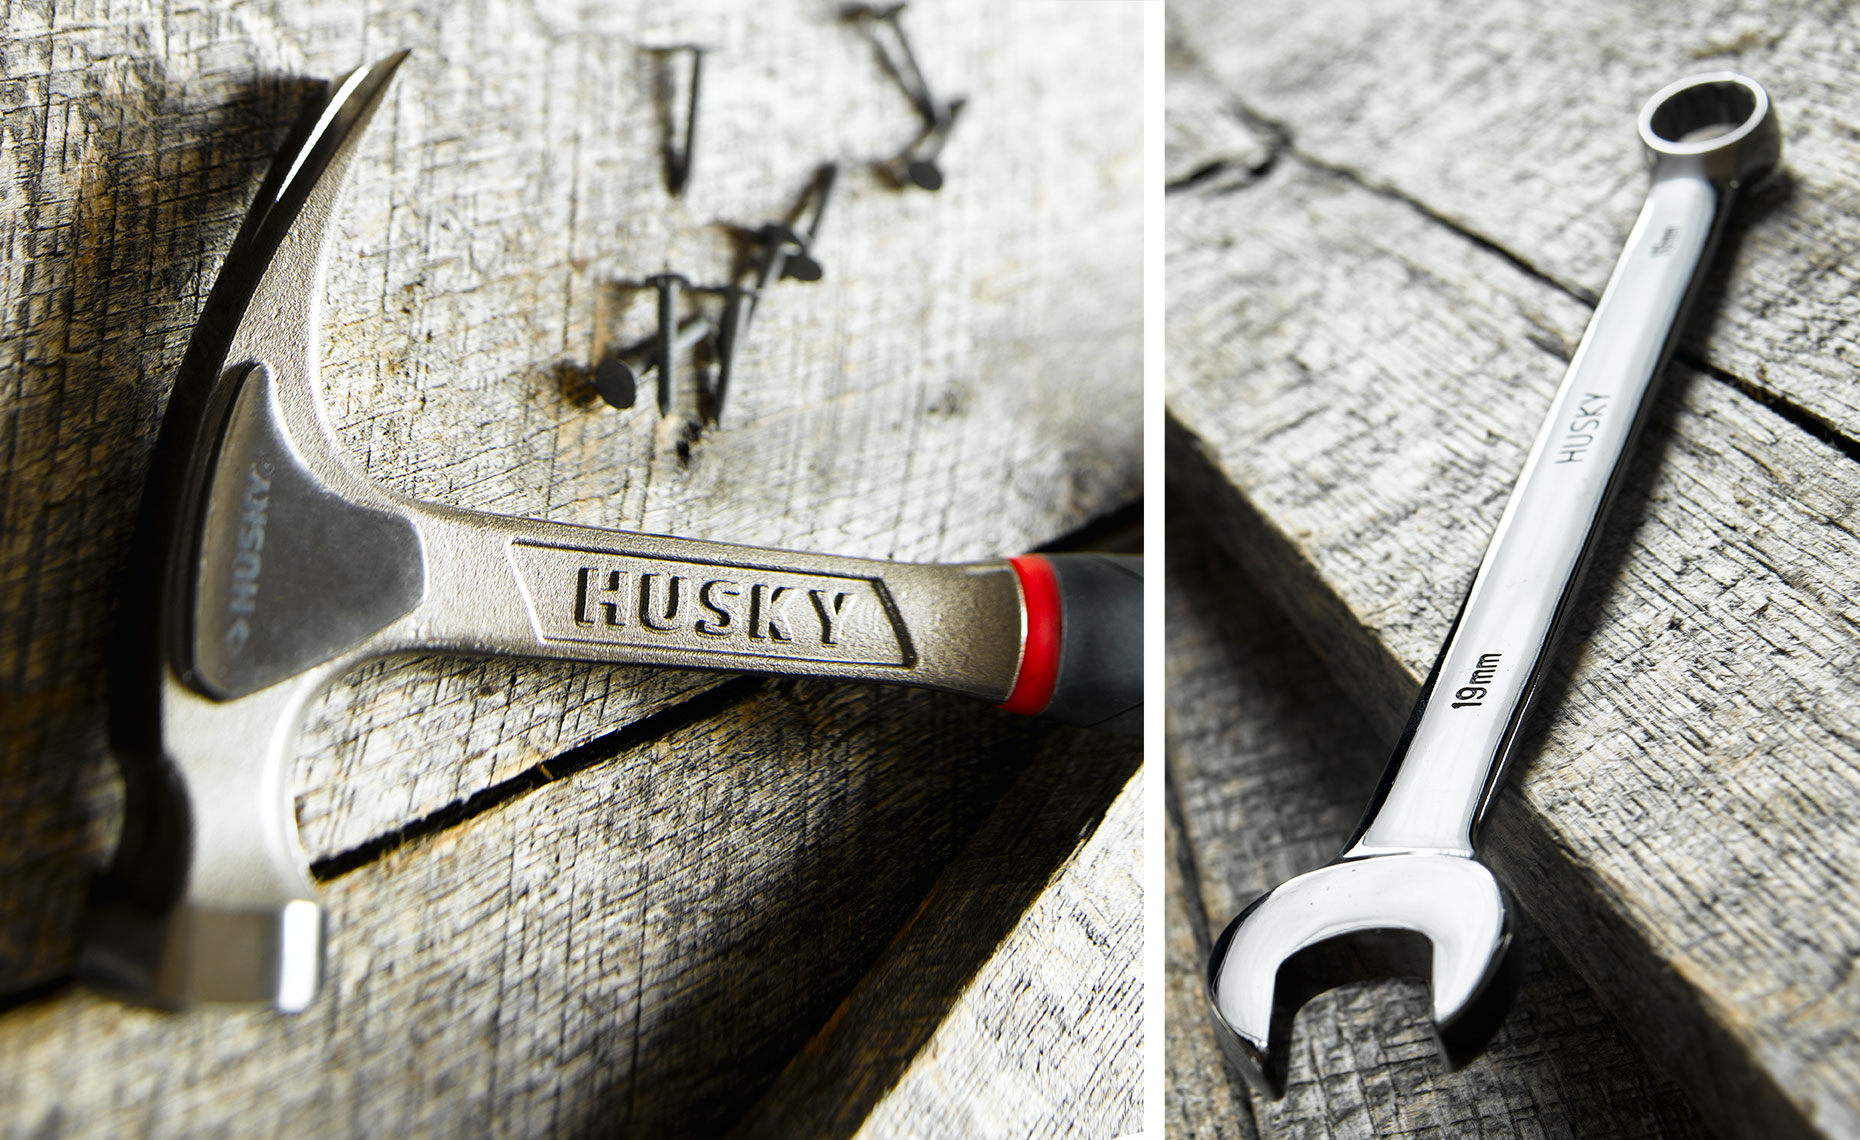 Husky tools on wood background 